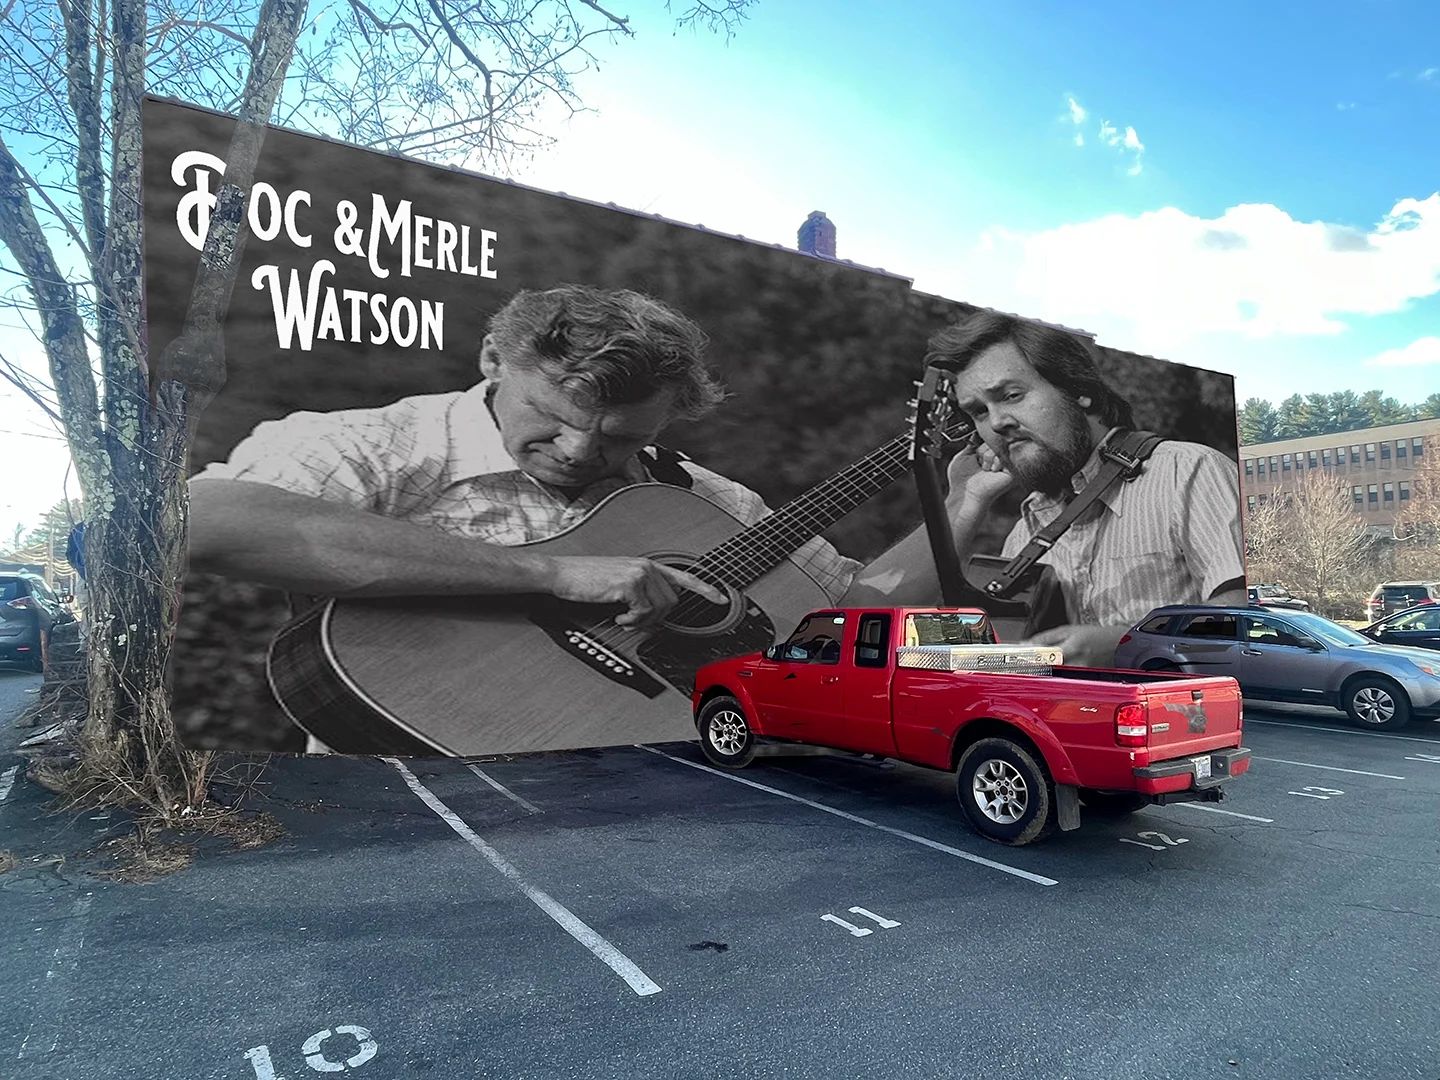 NC Arts Board Of Directors To Visit Boone, Watson Mural Work Begins This Week